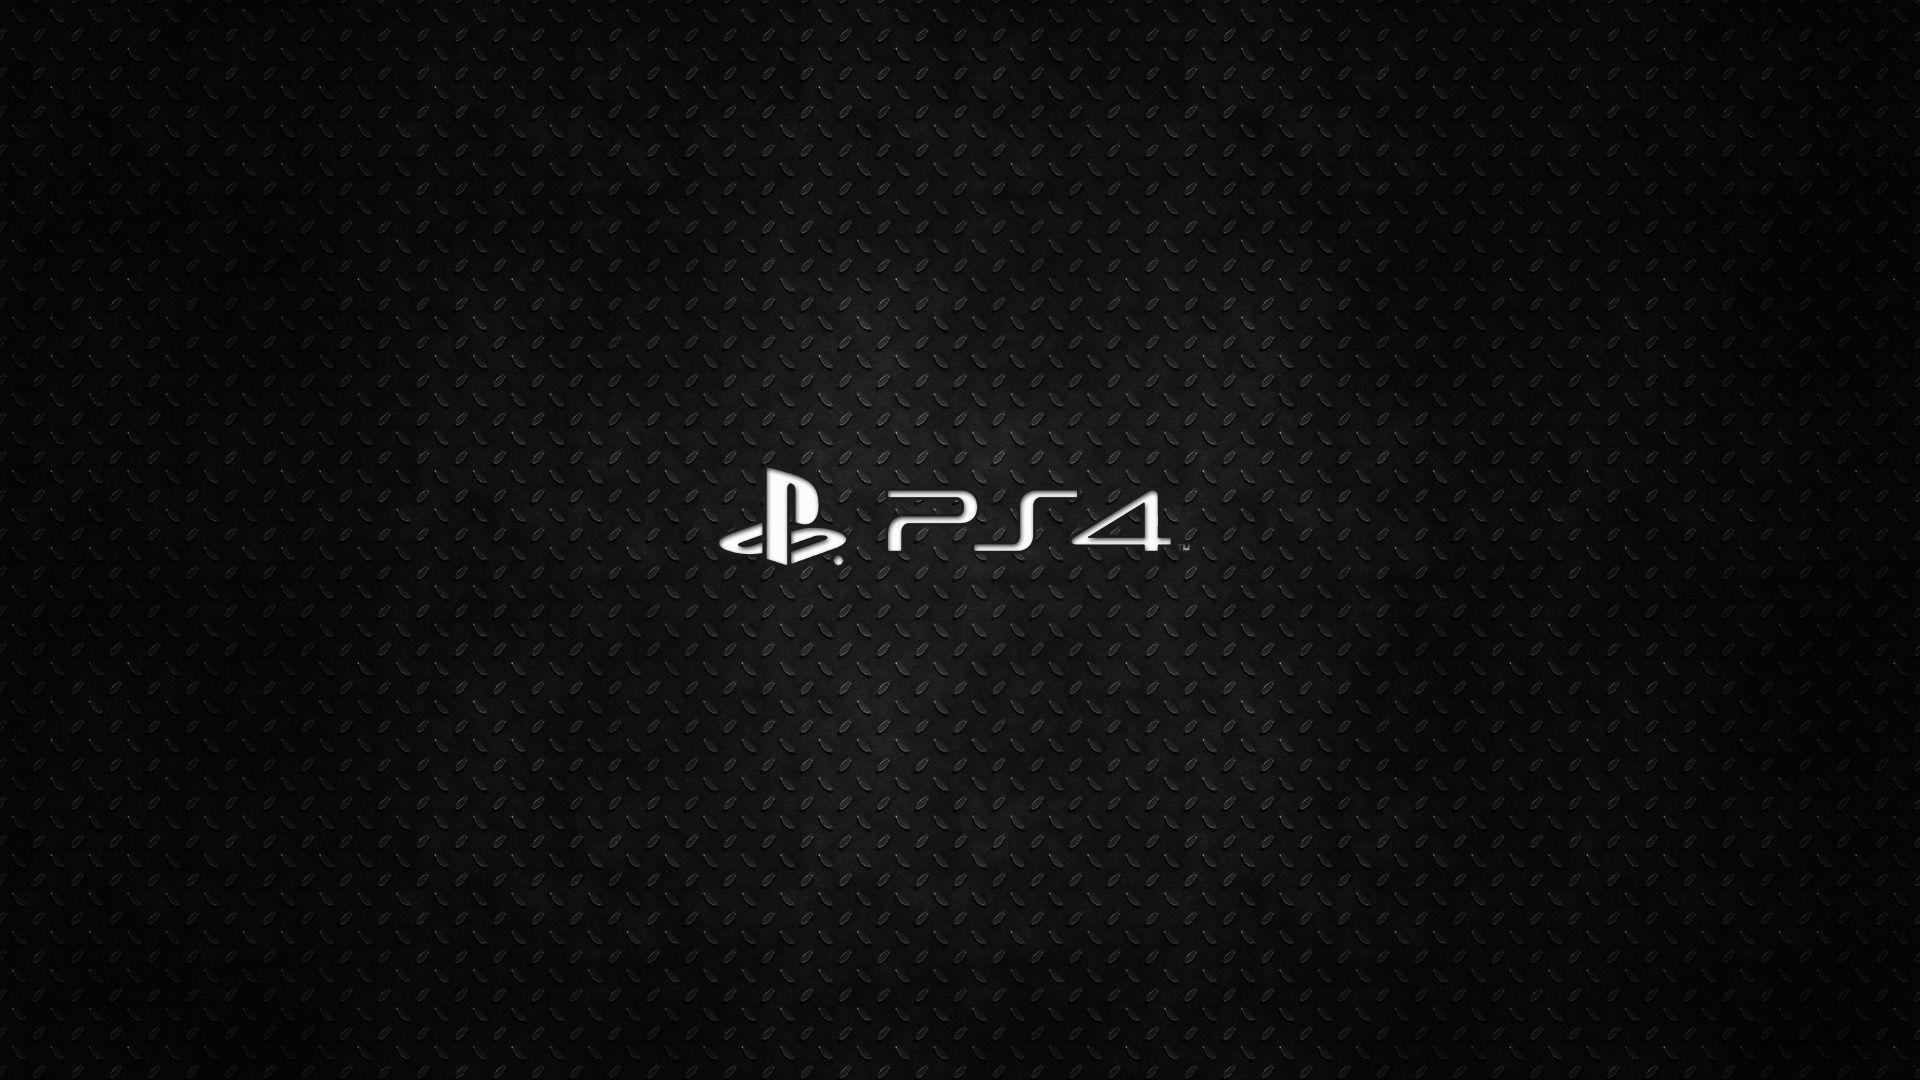 Playstation 4 Wallpaper. Playstation logo, Playstation